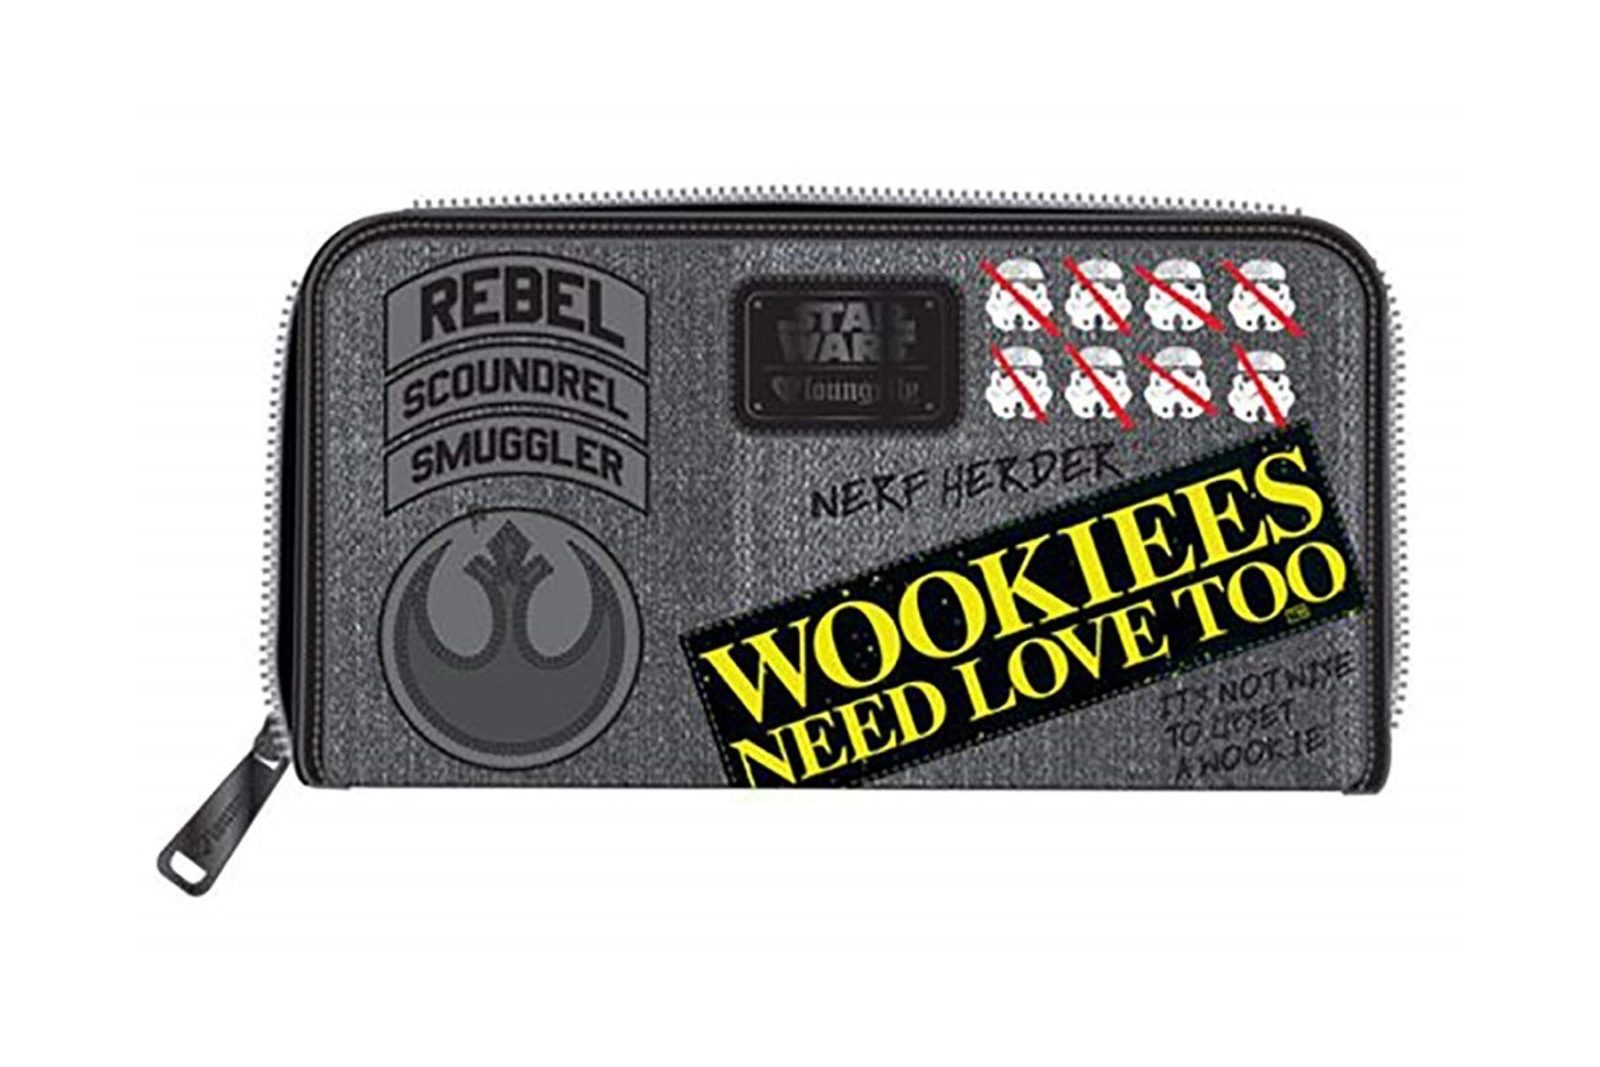 Loungefly x Star Wars Rebel Wookiee Wallet